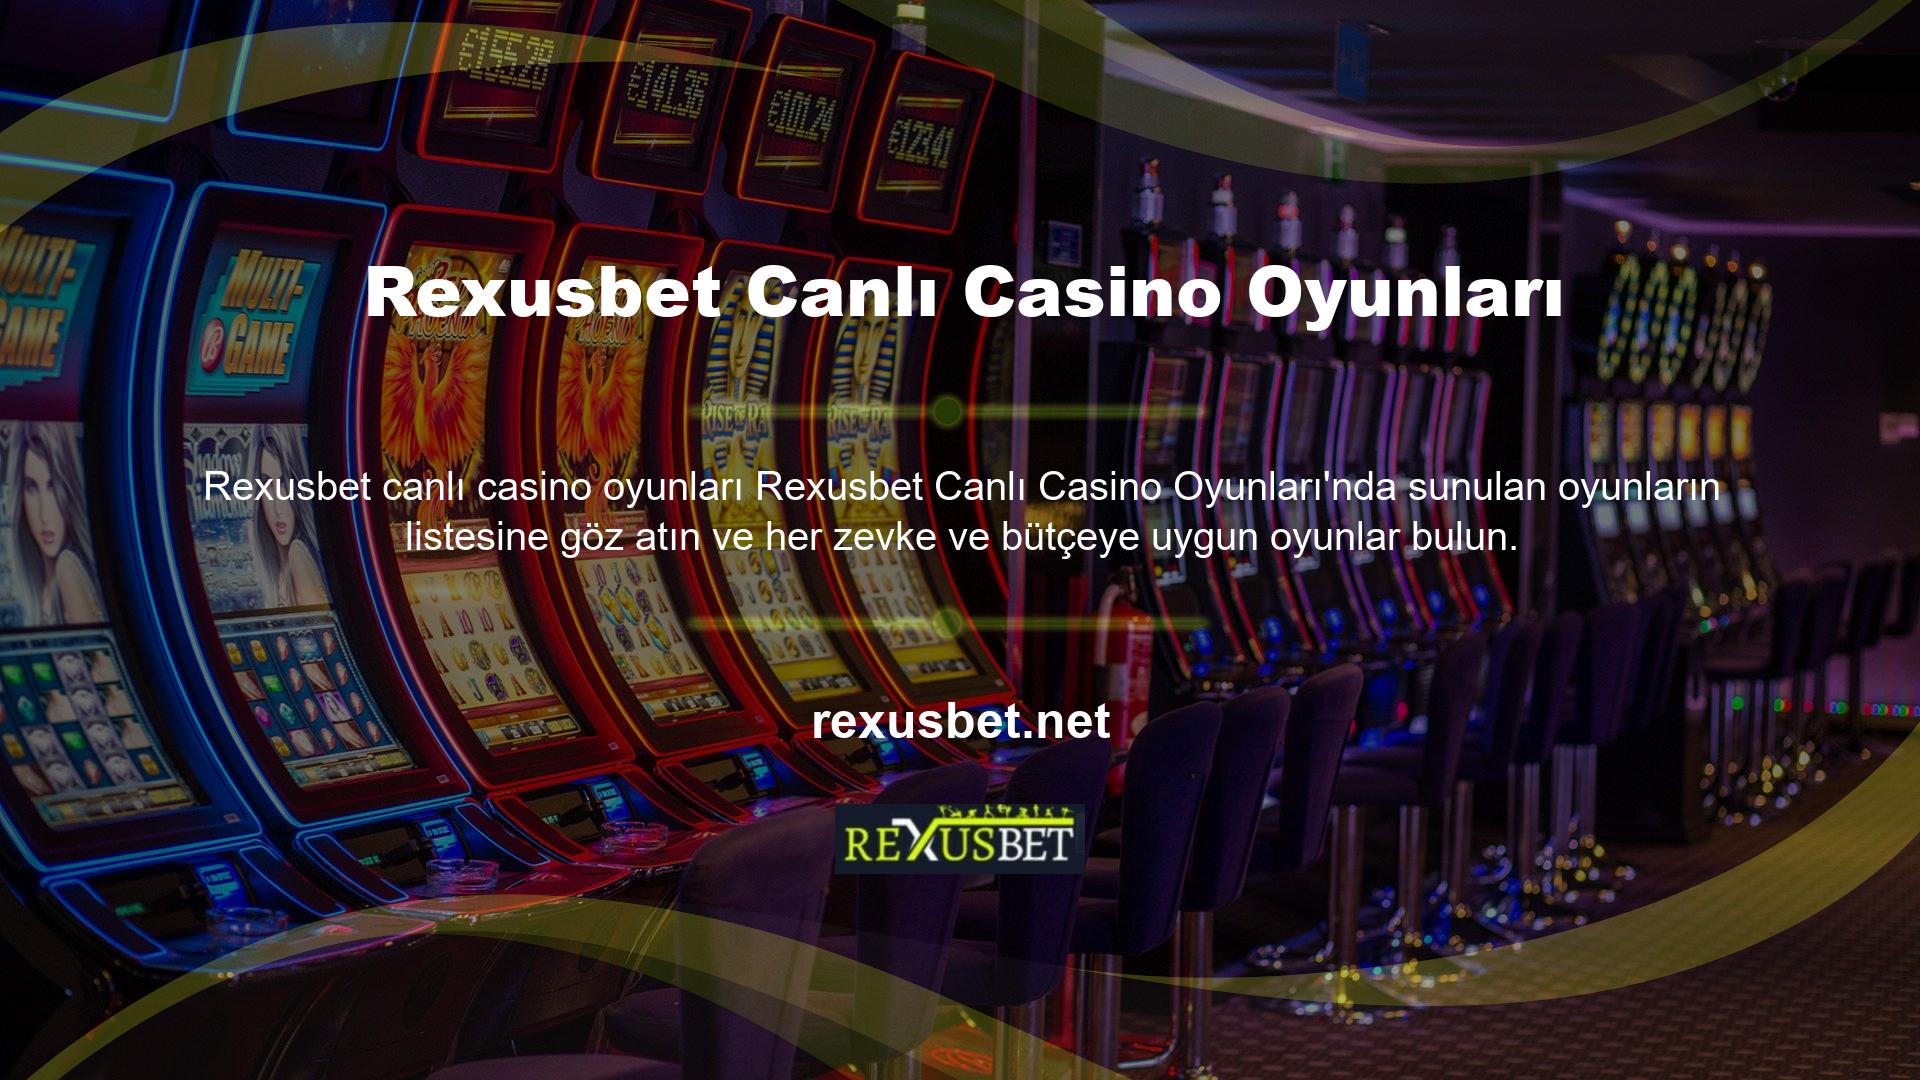 Canlı casino hizmetlerinin en geniş yelpazesi blackjack oyunlarına ayrılmıştır ve Rexusbet Rulet Puanlı Canlı Casino Oyunu seçeneğiyle şansınızı deneyebilirsiniz